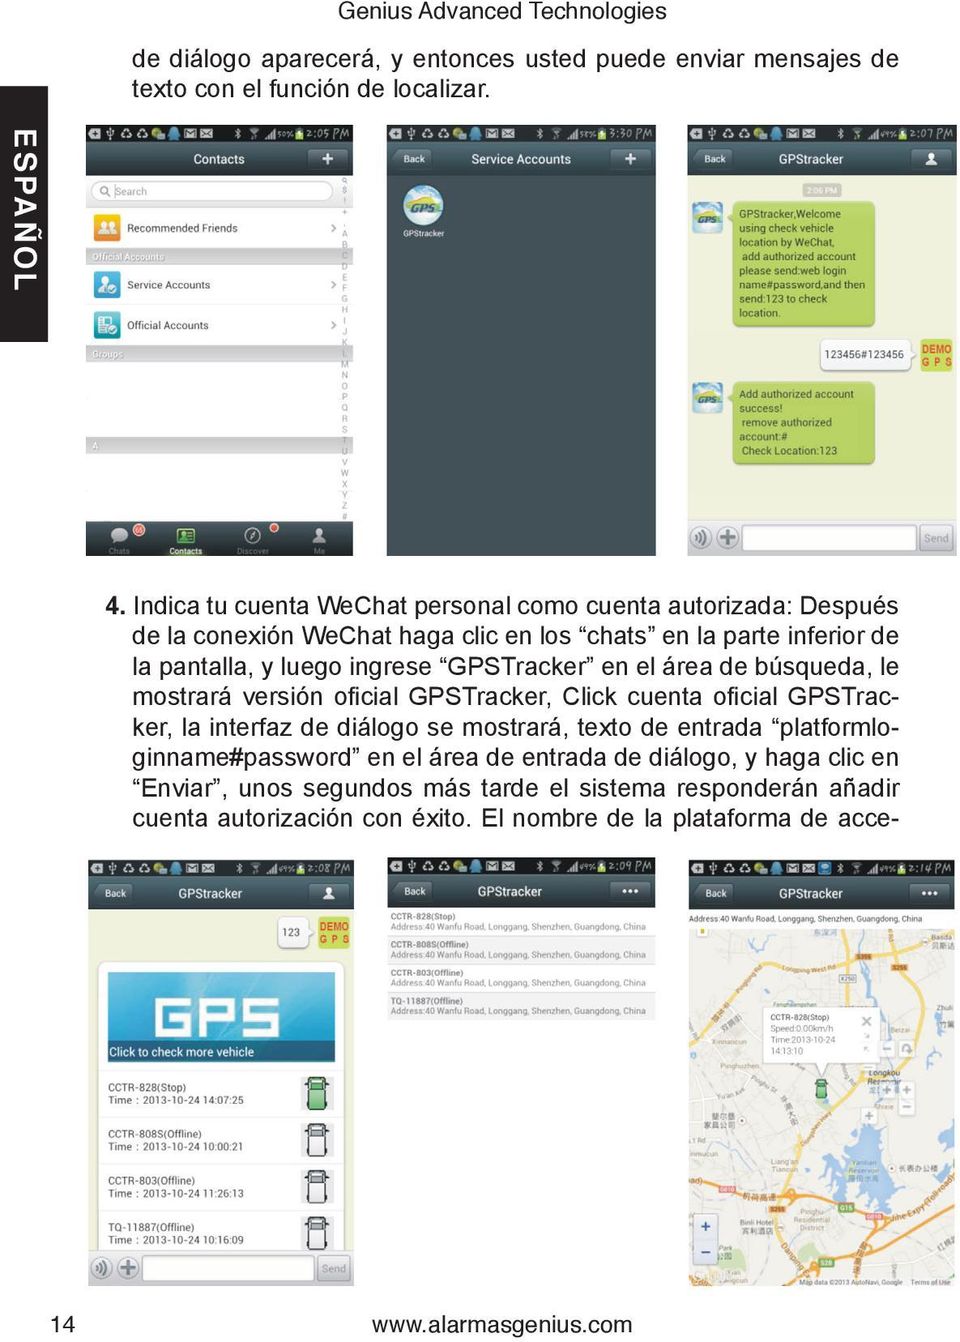 GPSTracker en el área de búsqueda, le mostrará versión oficial GPSTracker, Click cuenta oficial GPSTracker, la interfaz de diálogo se mostrará, texto de entrada